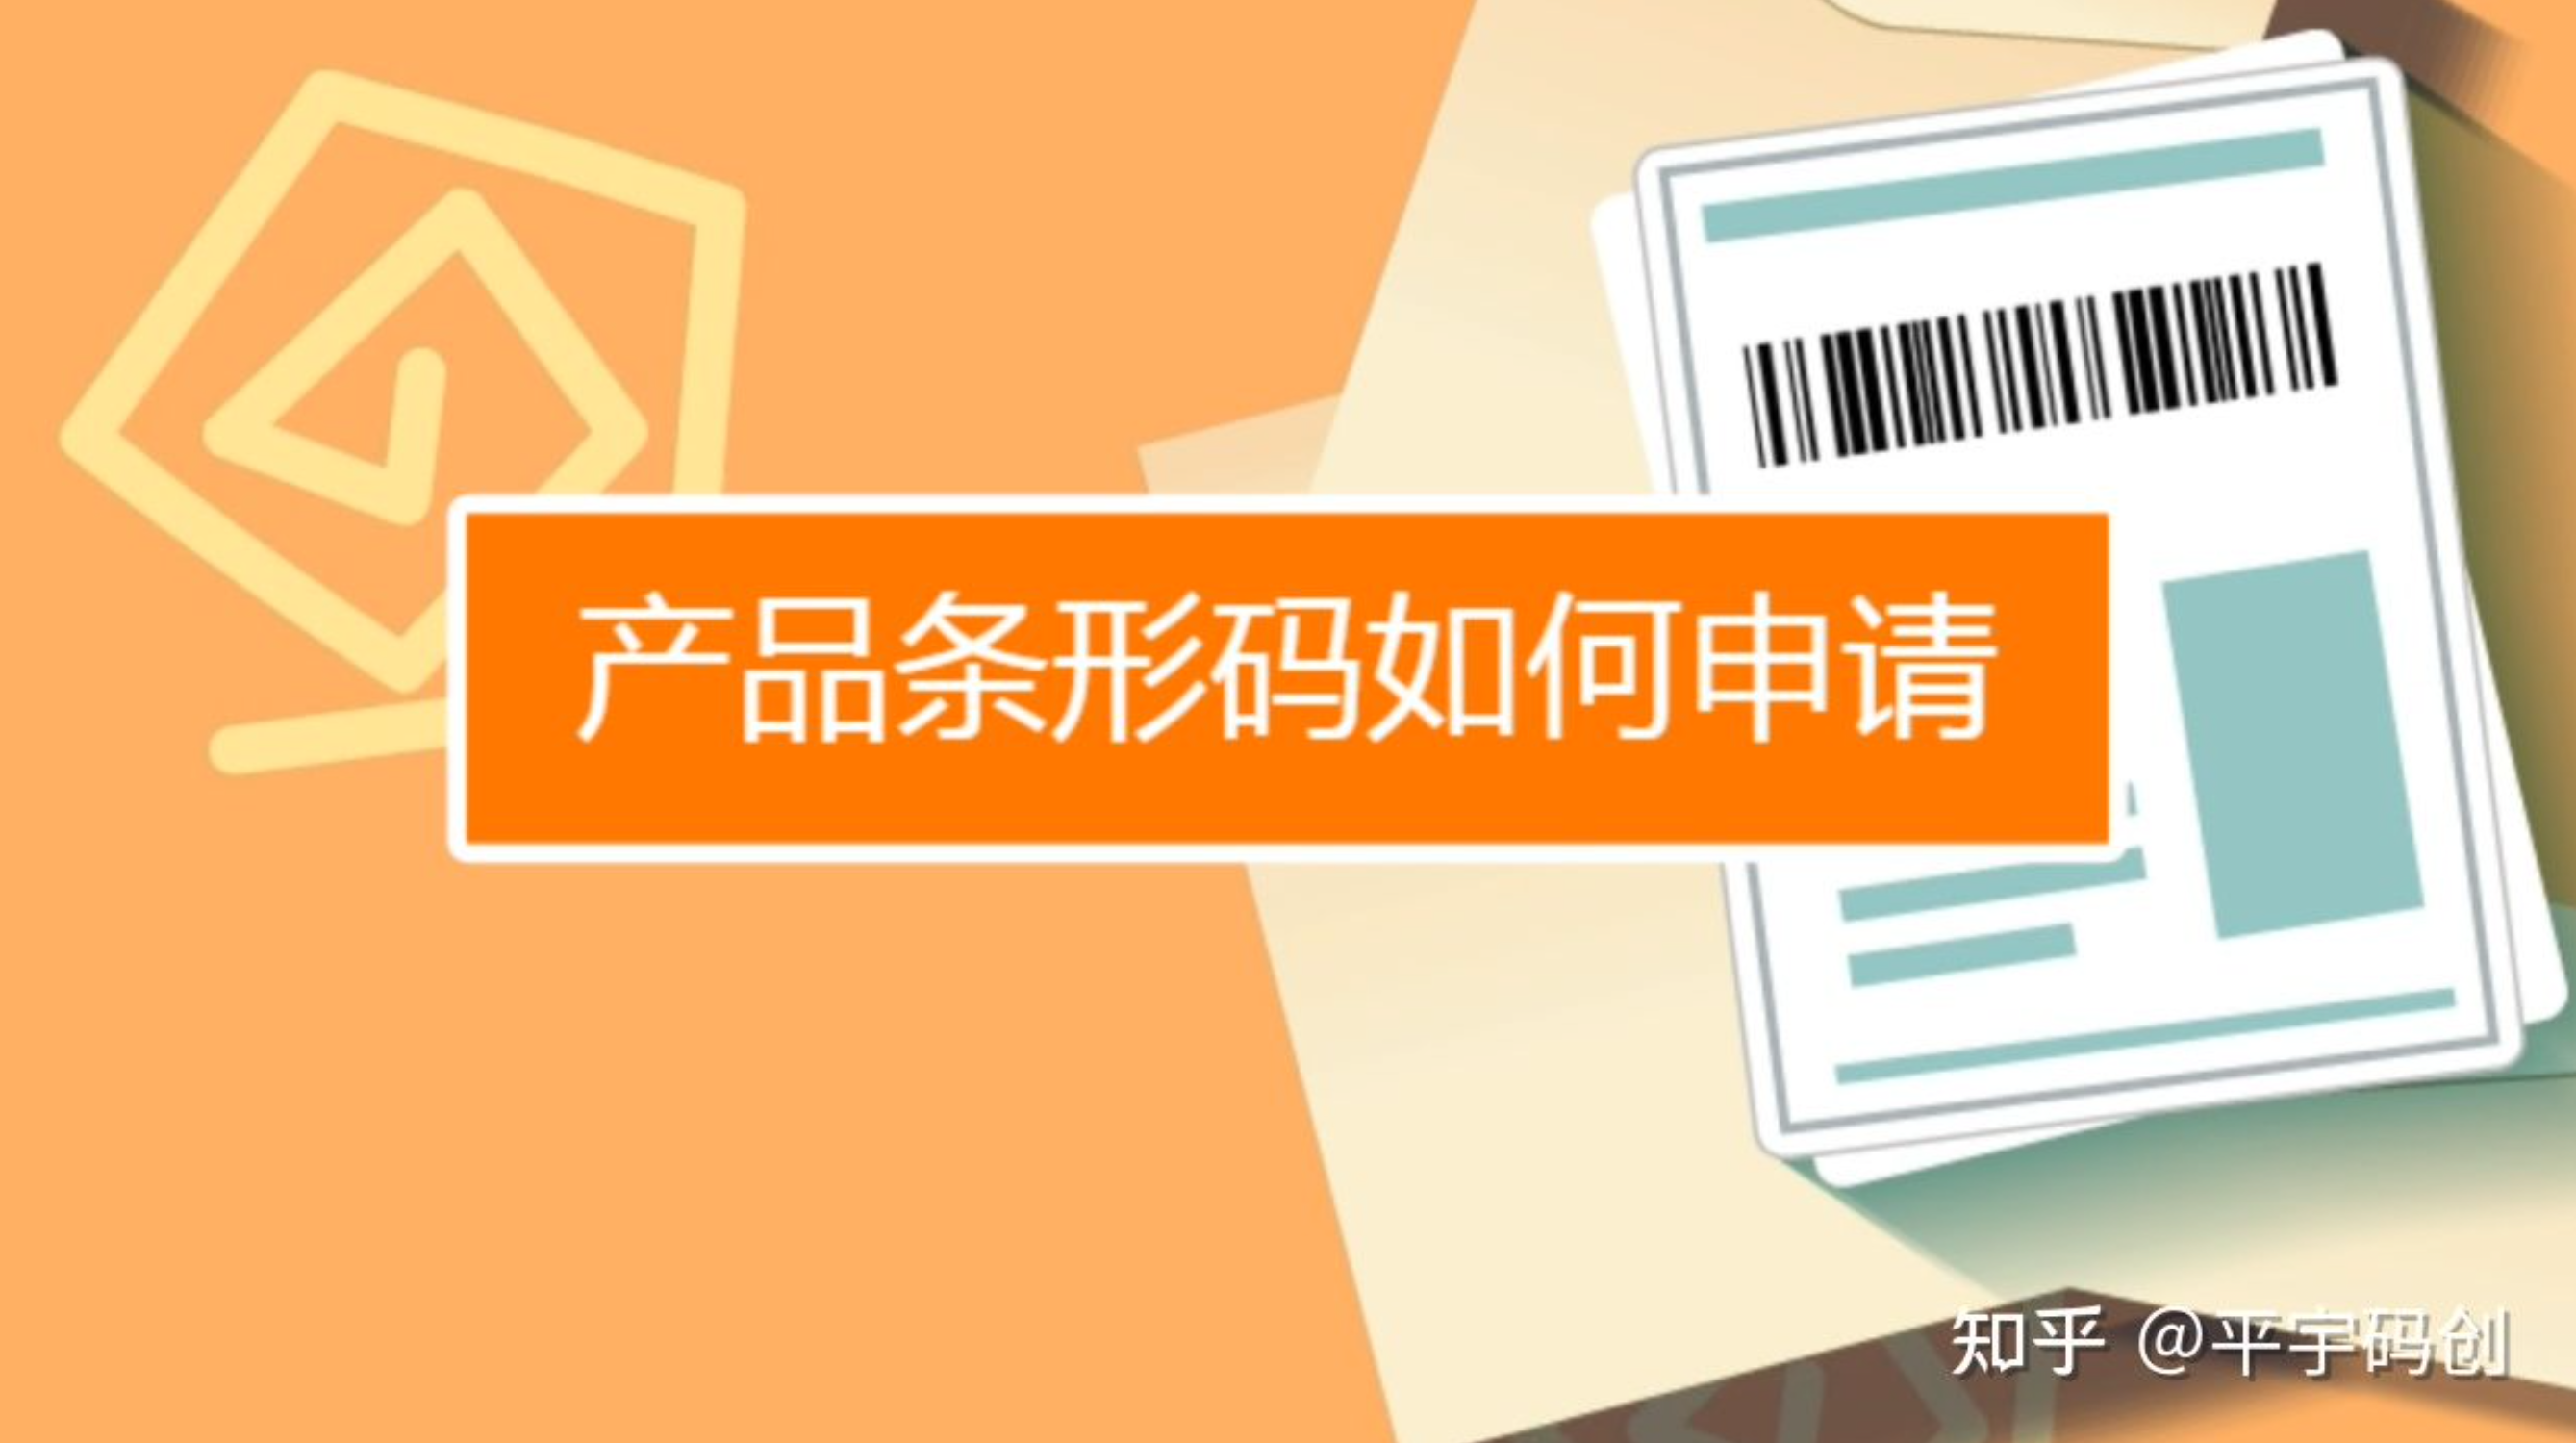 四川省条码与物品编码技术服务中心